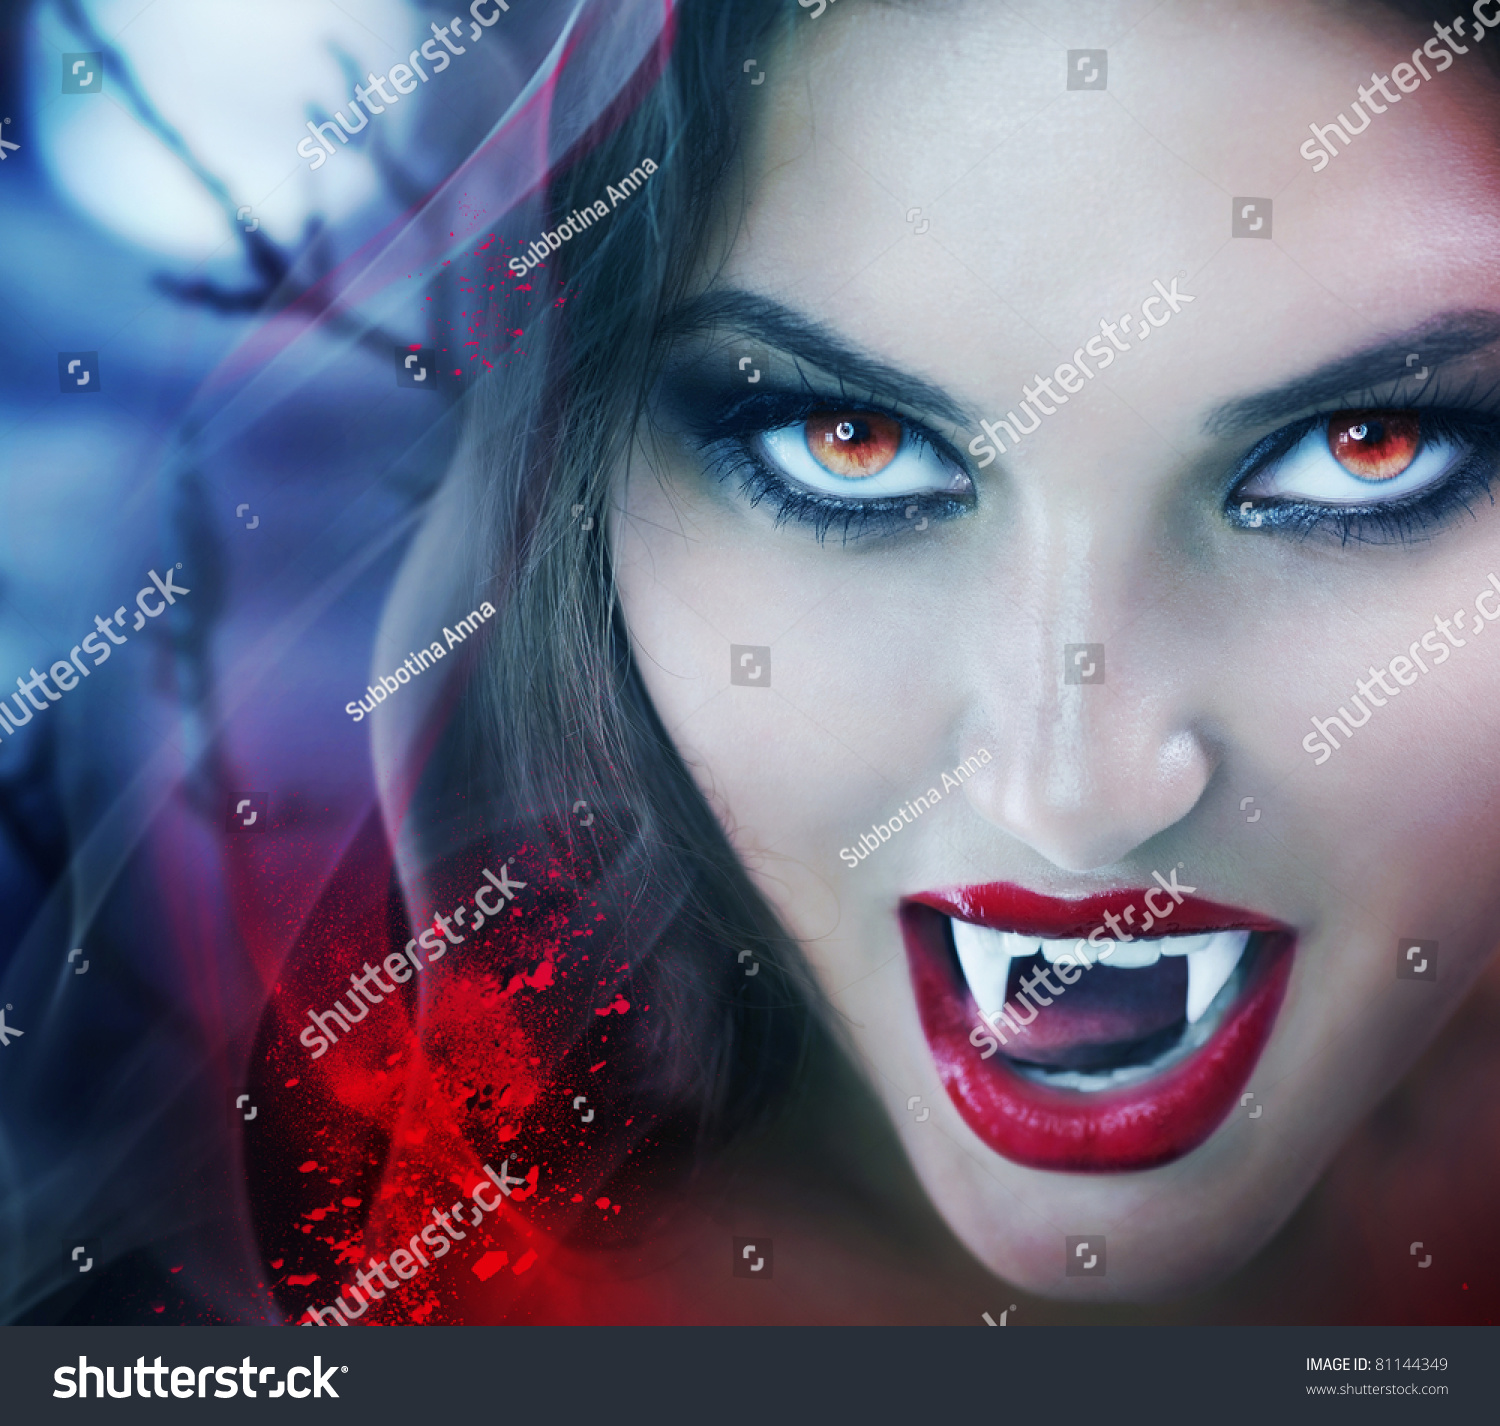 Vampire Stock Photo 81144349 - Shutterstock